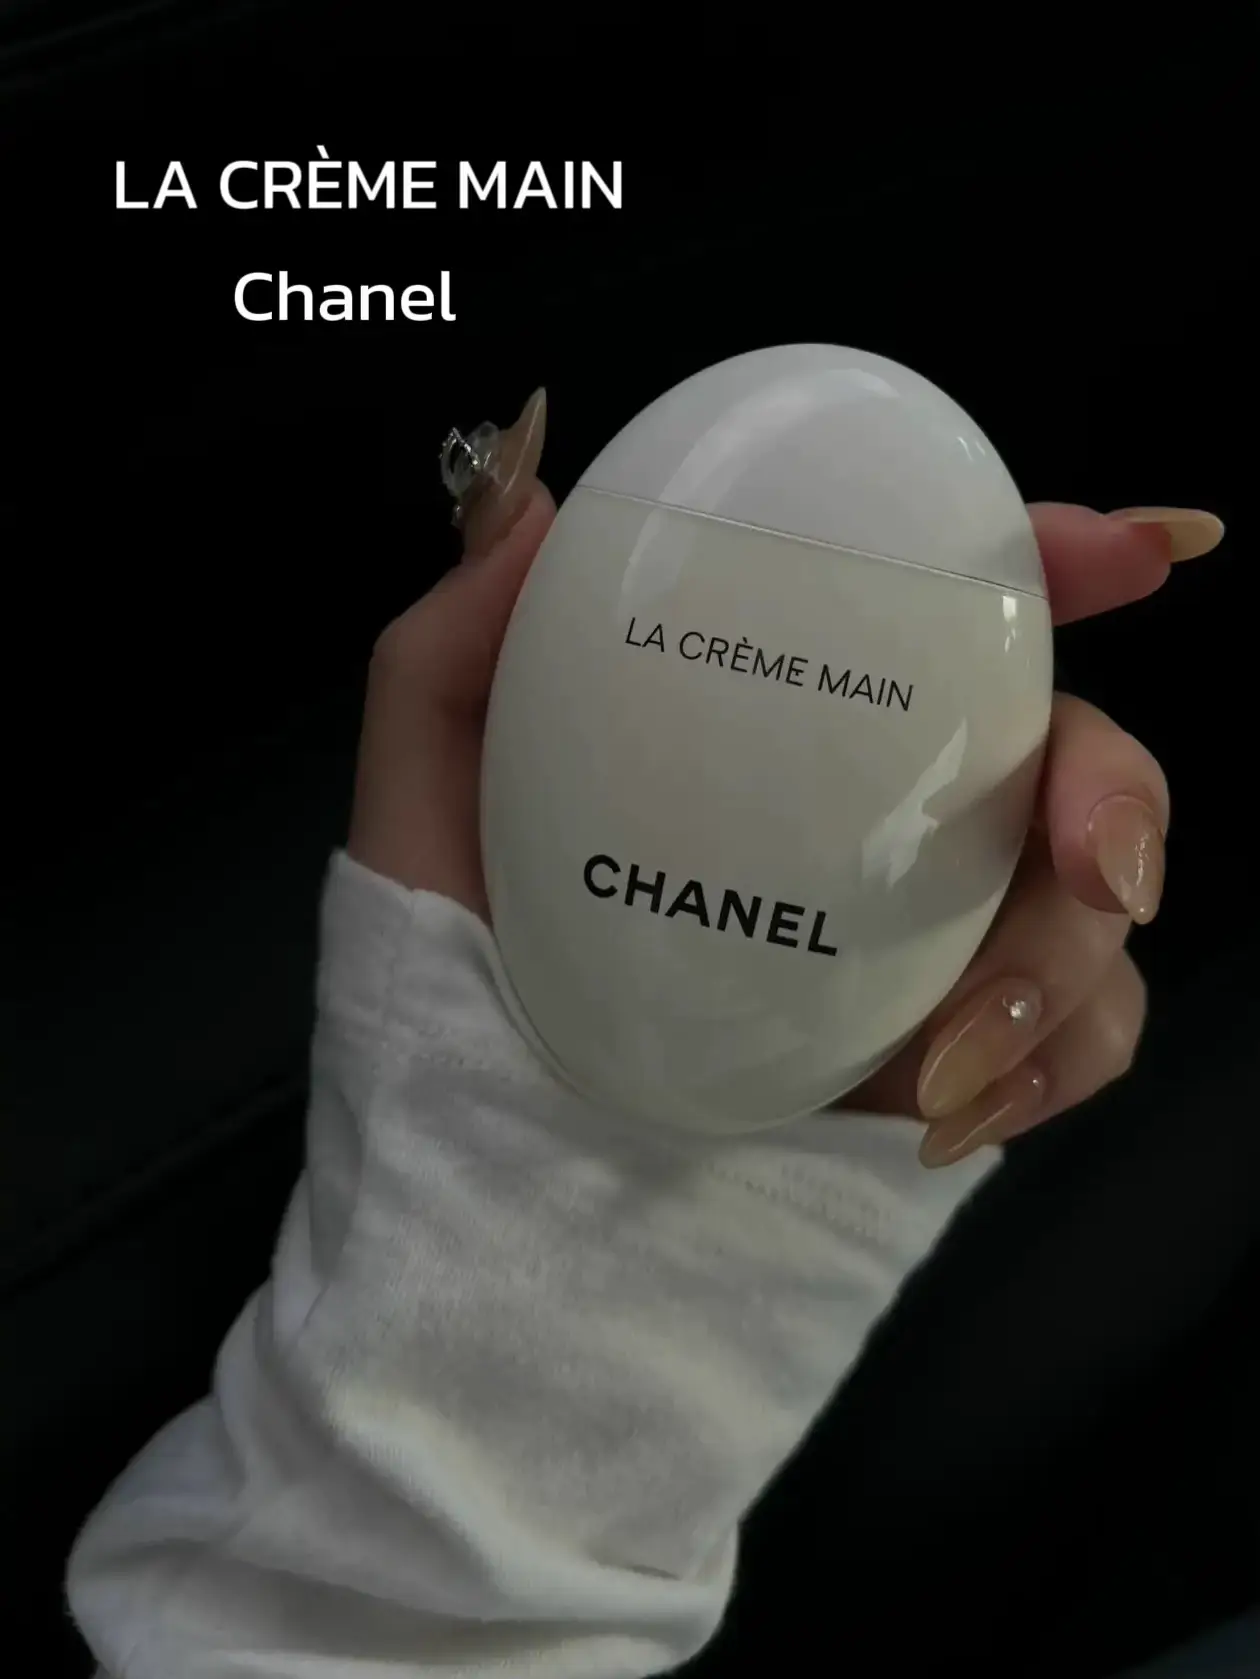 La Crème Main- Chanel Handcream, Gallery posted by yusezy